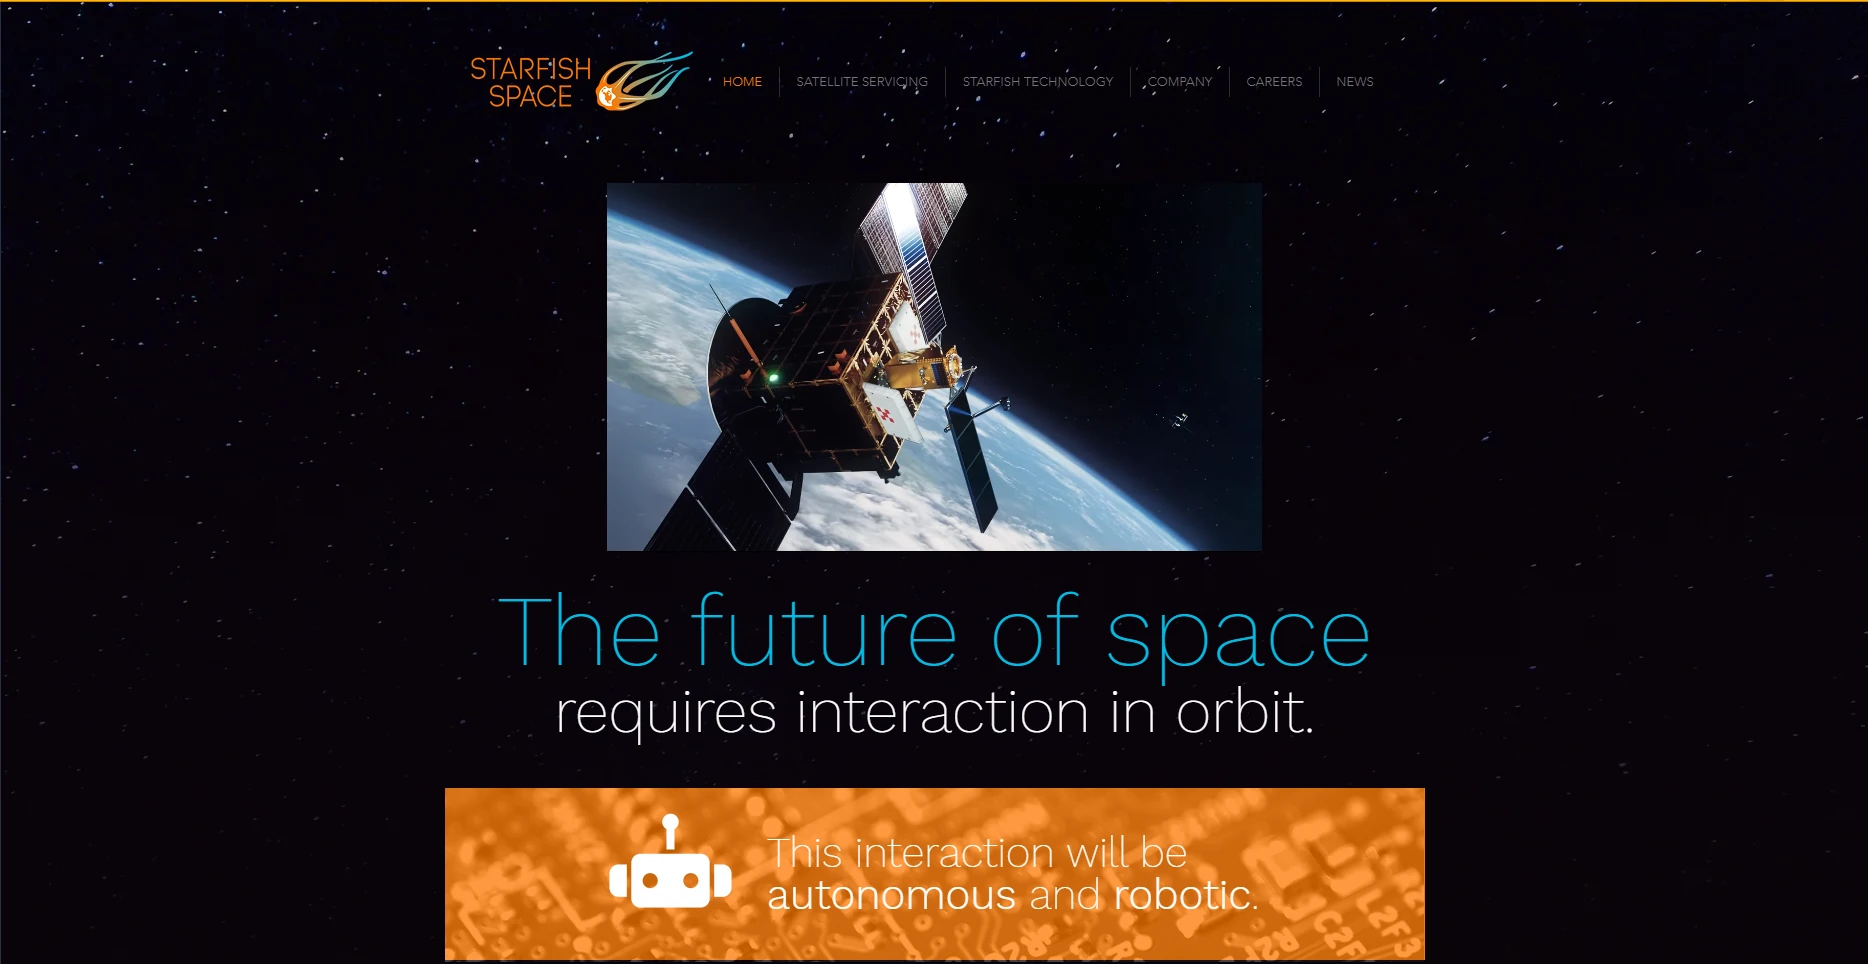 Starfish space website screenshot